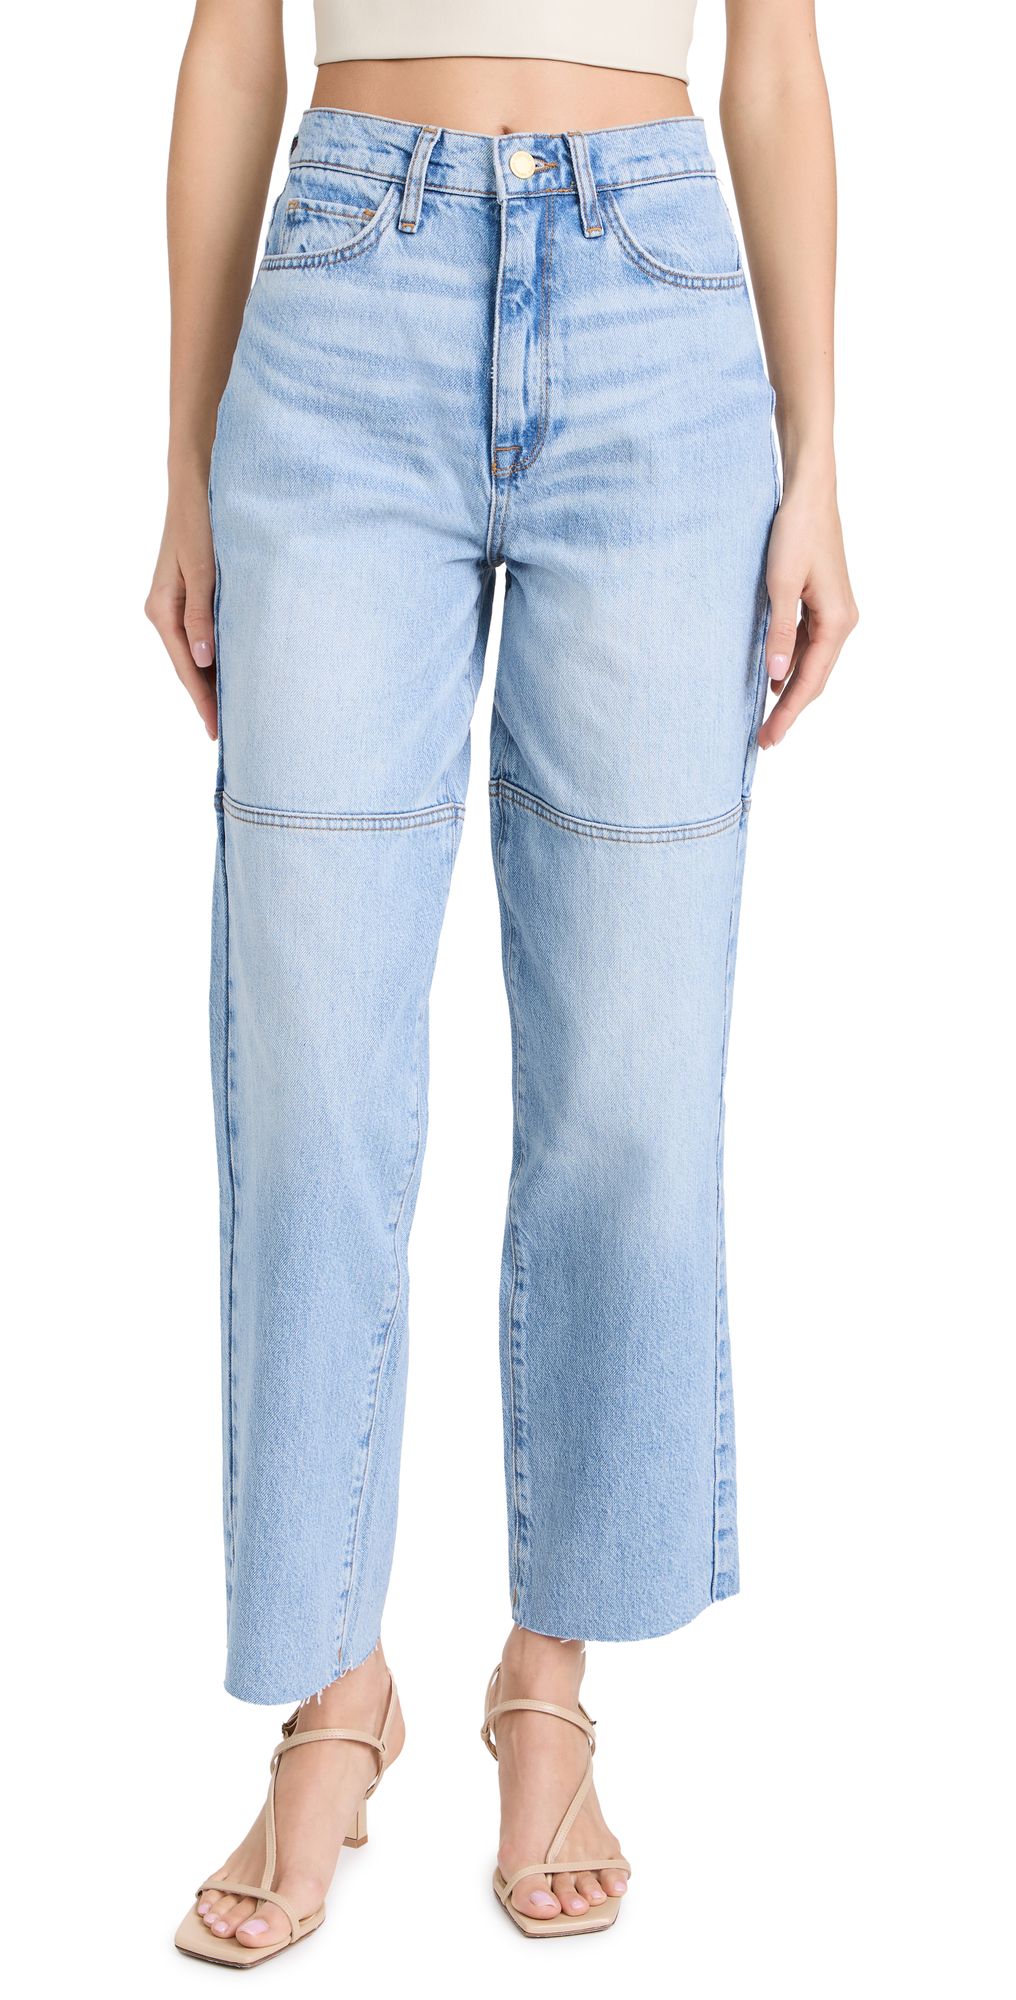 Triarchy Ms. Triarchy Cut Jeans | Shopbop